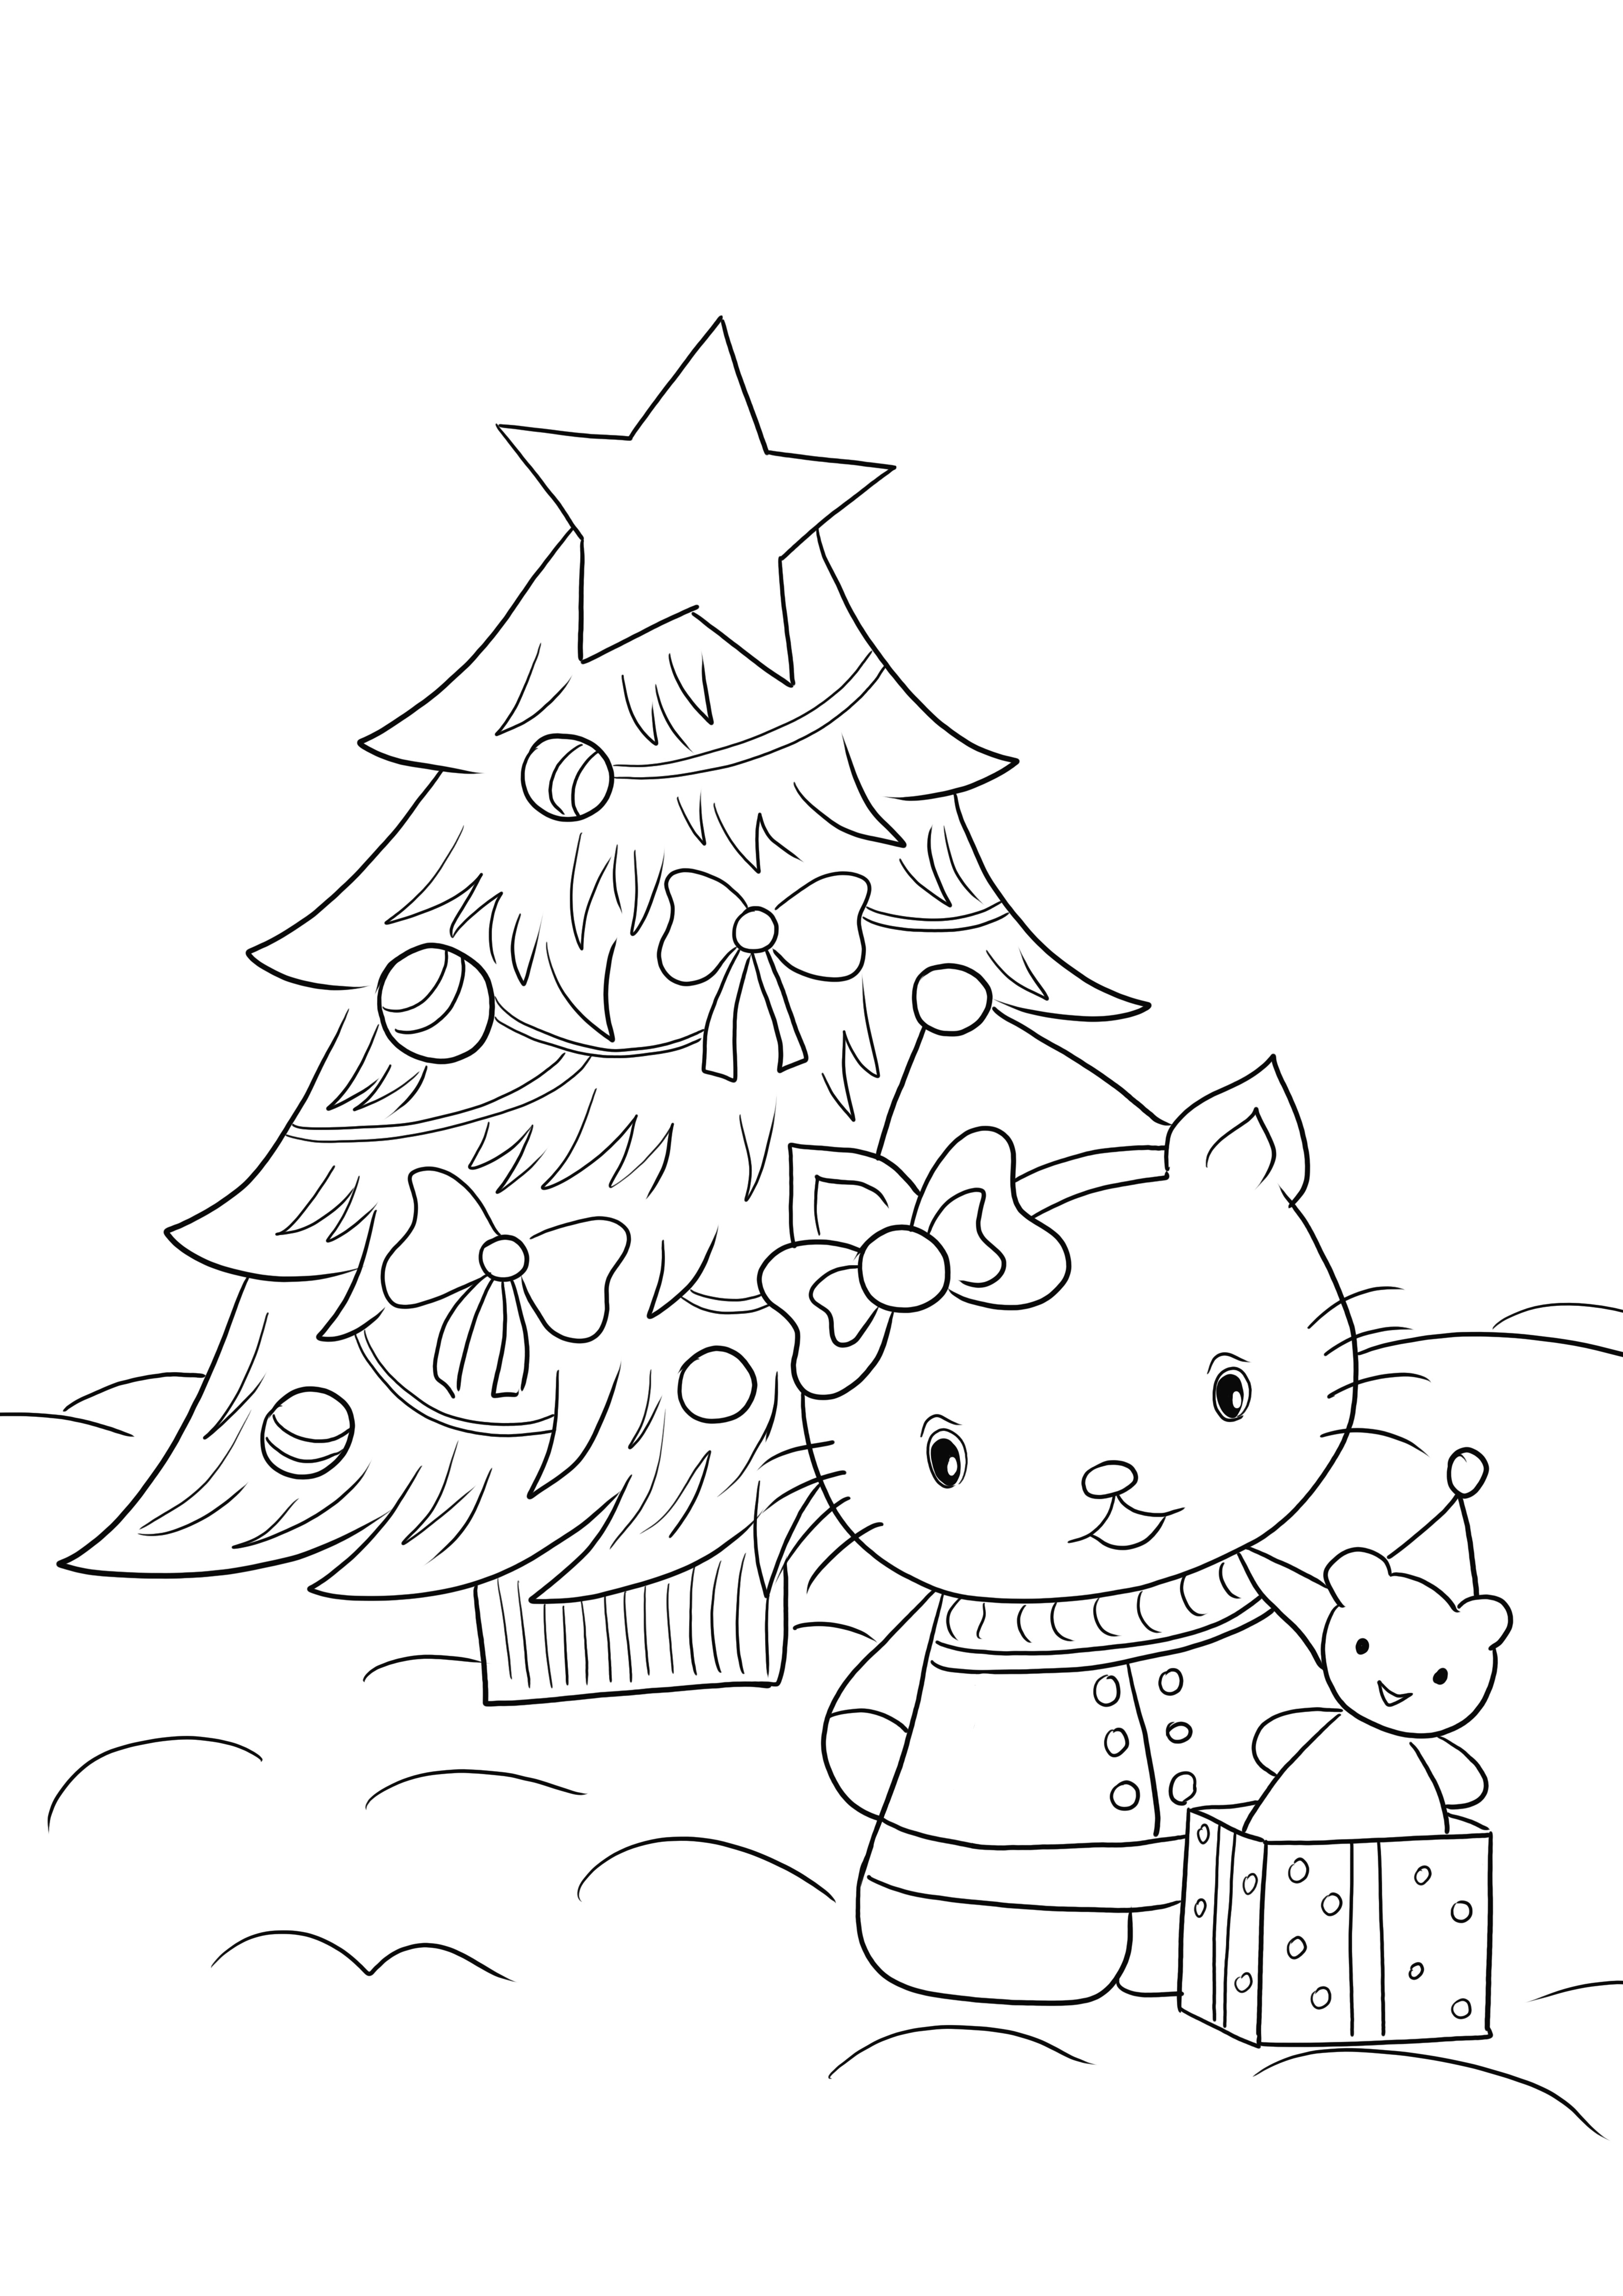 Gratis kleuren en printen van Hello Kitty en de kerstboom voor kinderen om te kleuren kleurplaat